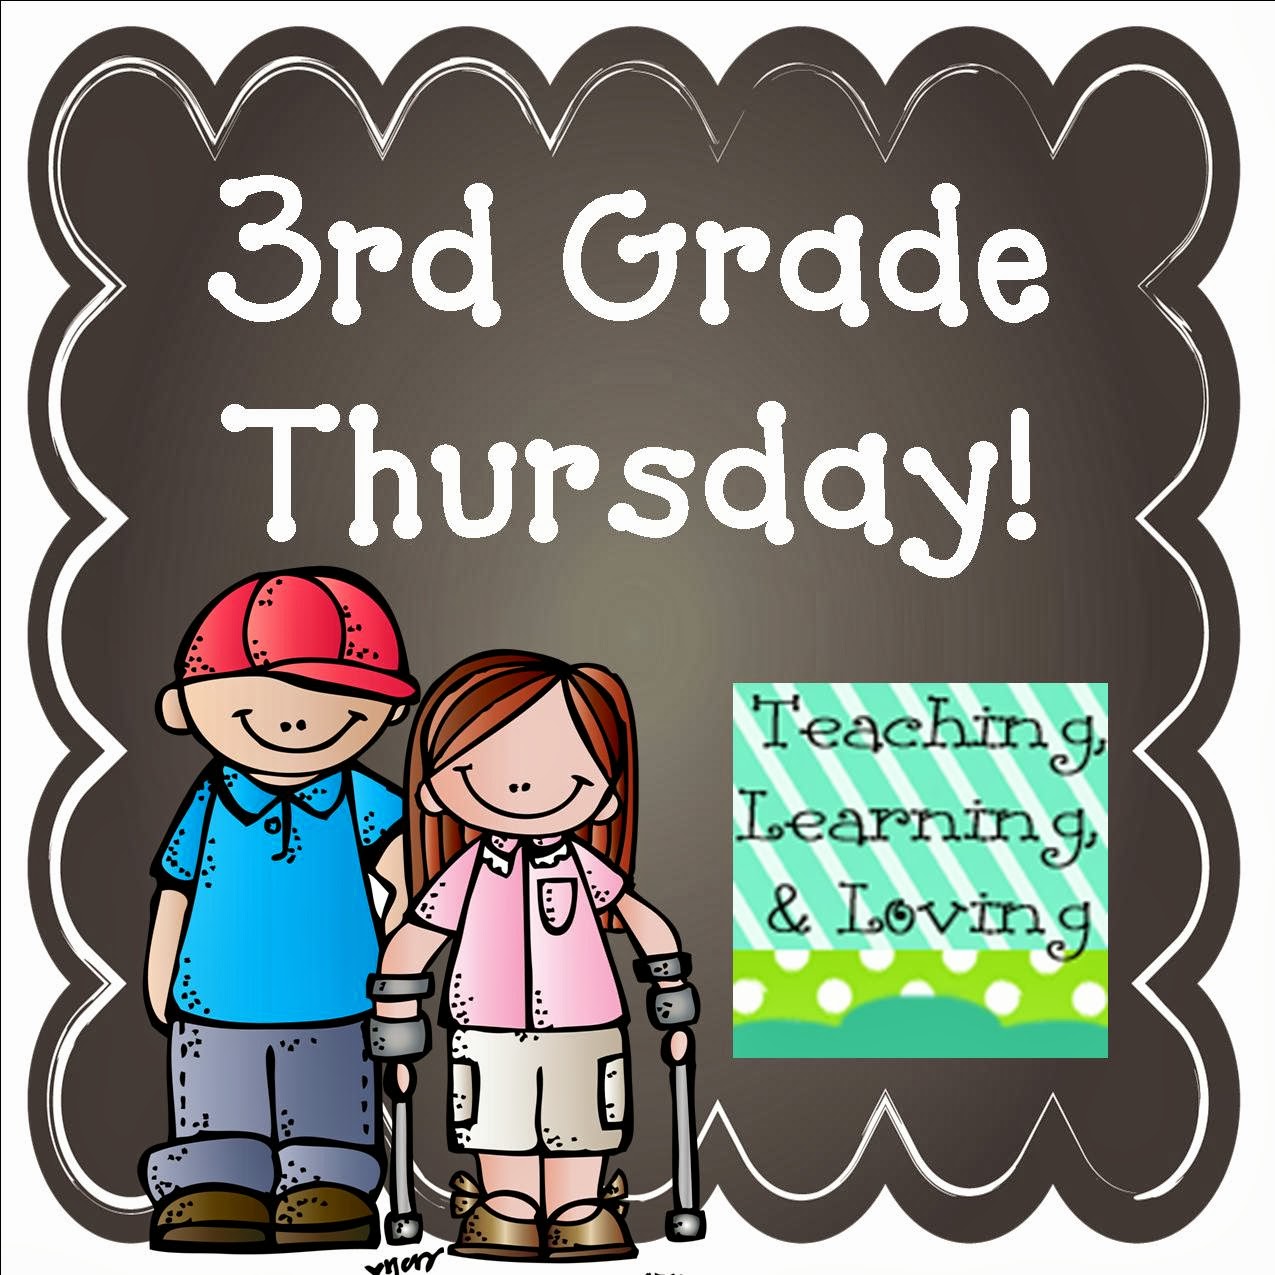 teaching-learning-loving-3rd-grade-thursday